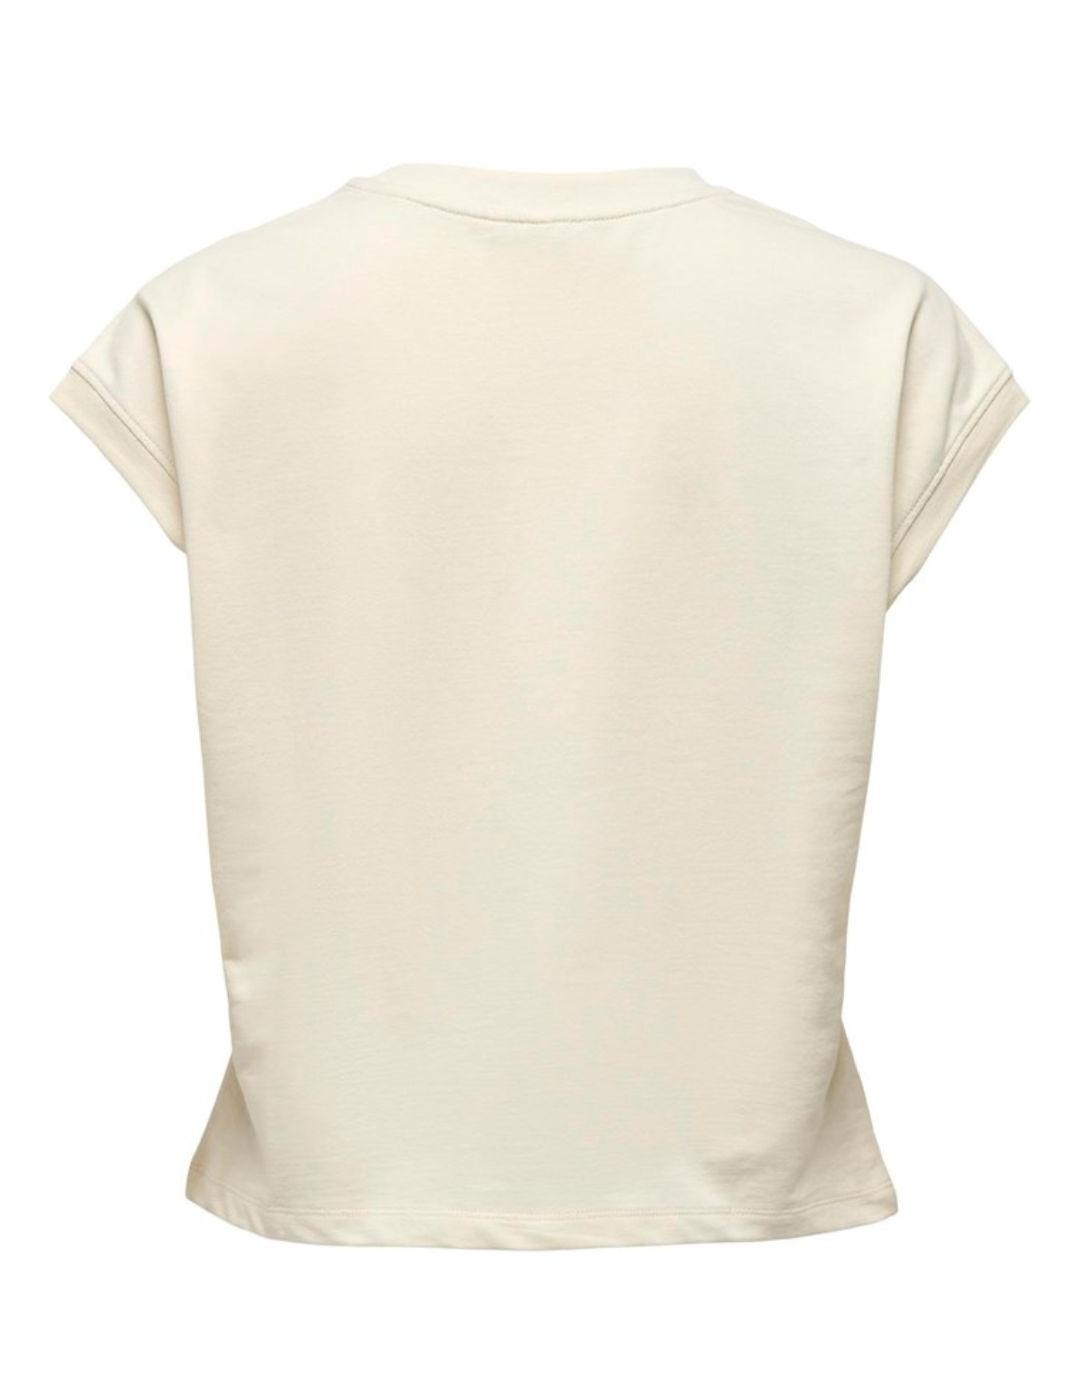 Camiseta Only Ellie blanco roto manga sisa para mujer